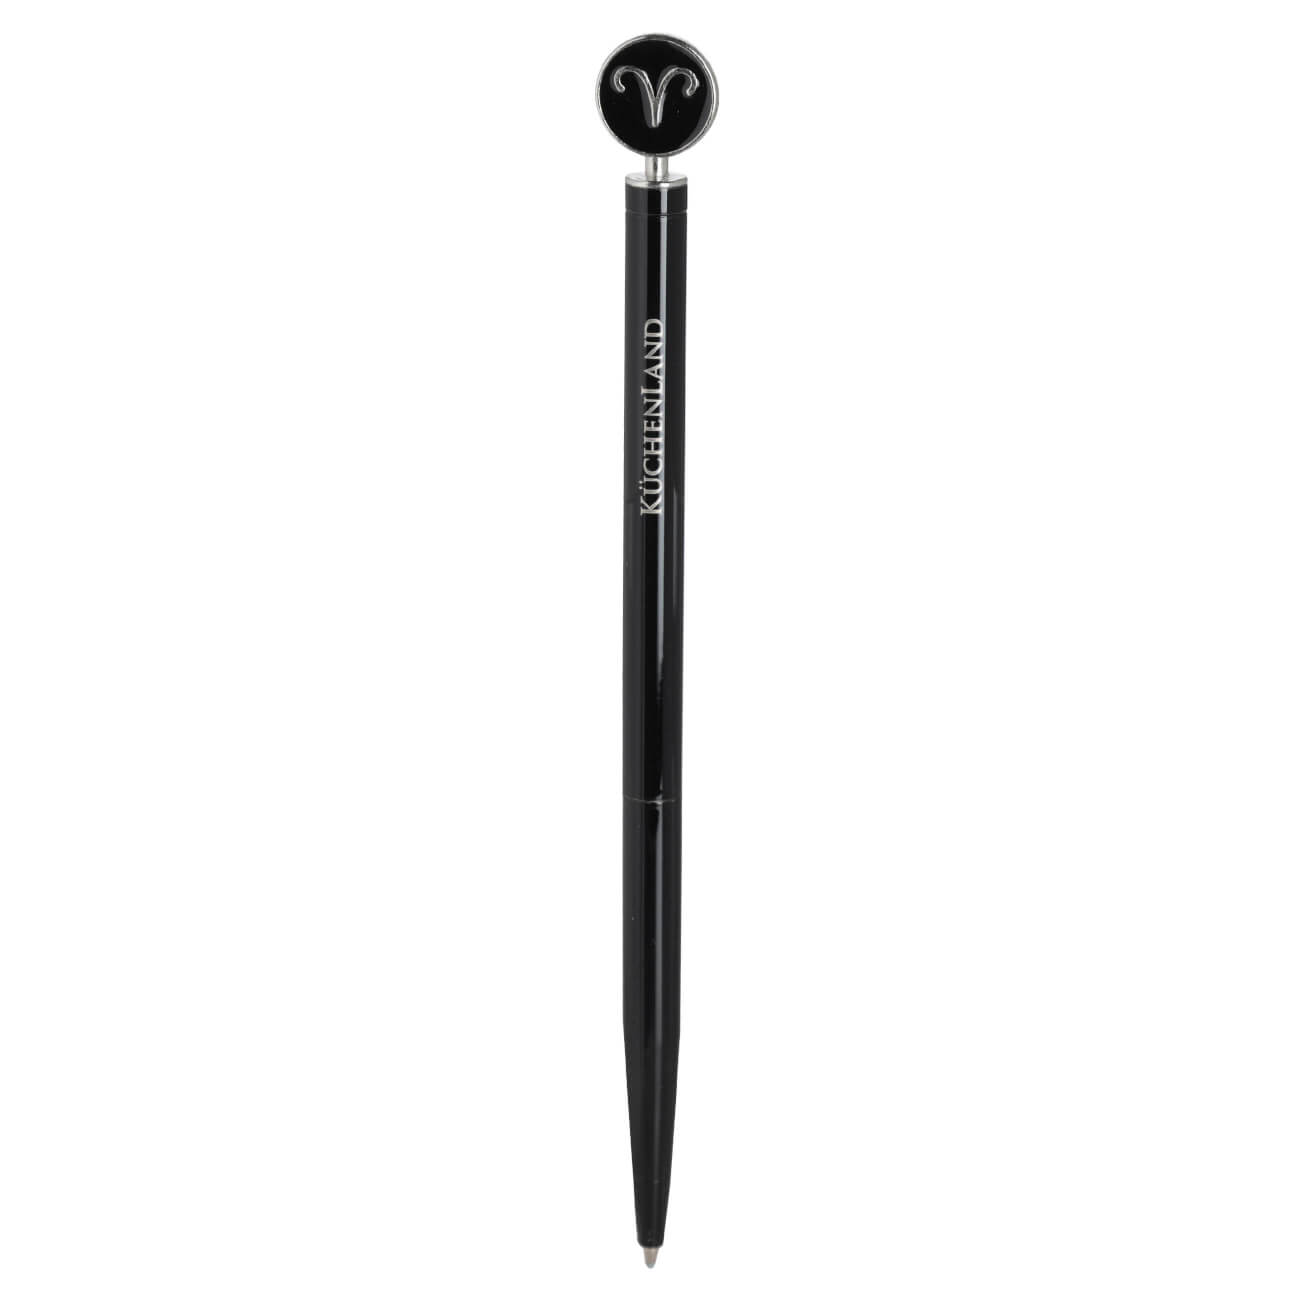 Ручка шариковая, 15 см, с фигуркой, сталь, черно-серебристая, Овен, Zodiac автоматическая шариковая ручка офисмаг